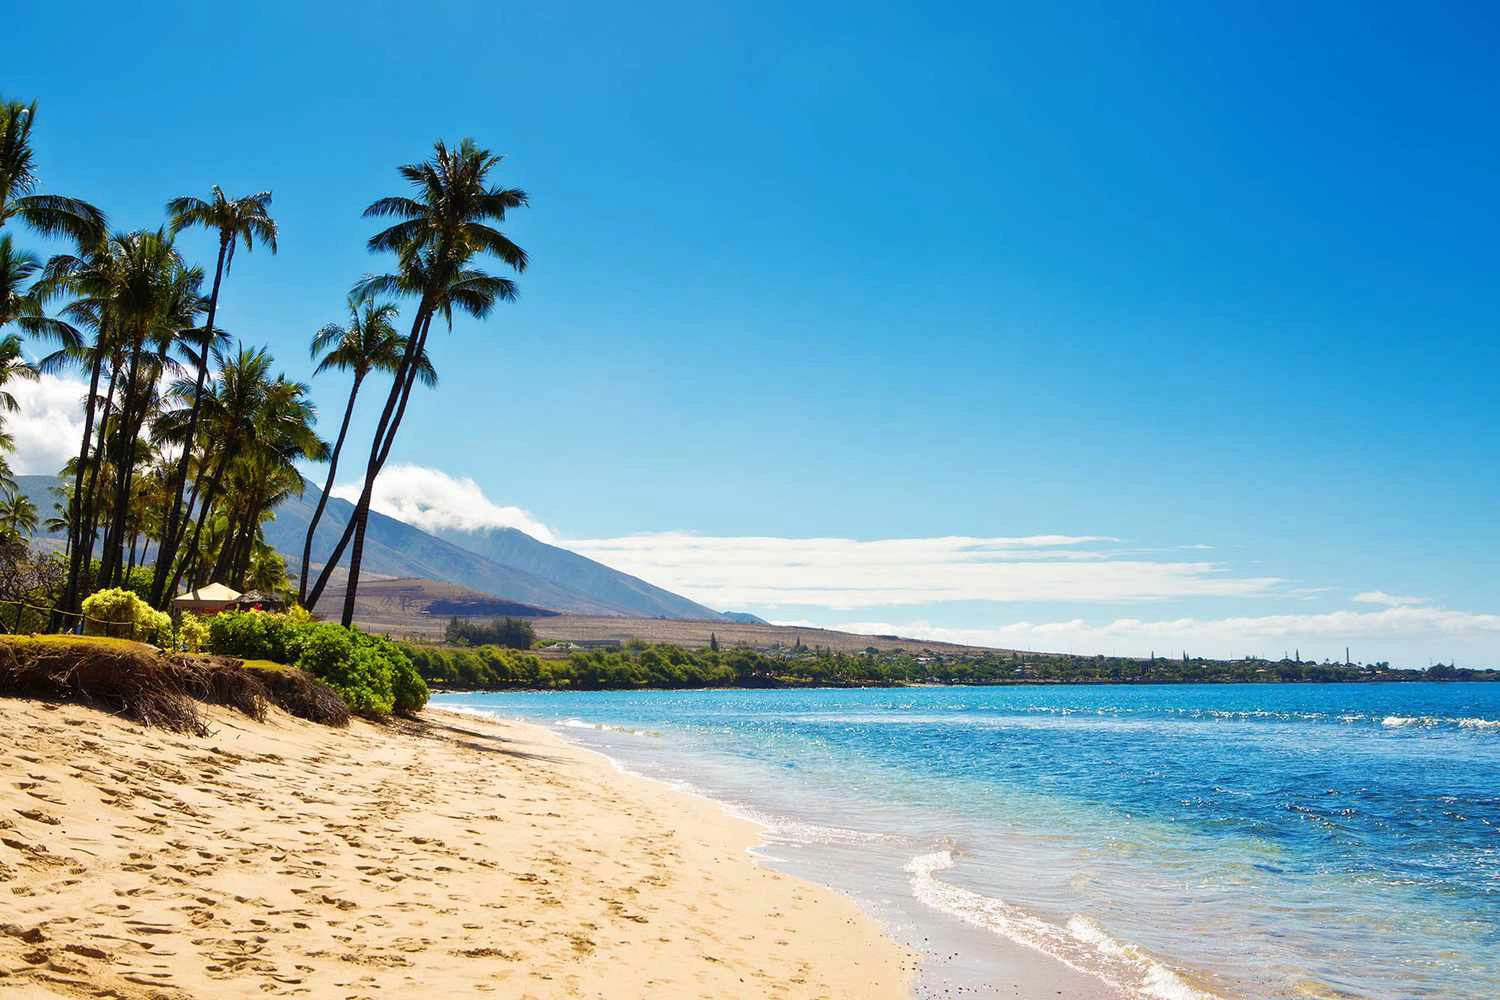  Kaanapali  strand - Hawaii Islands